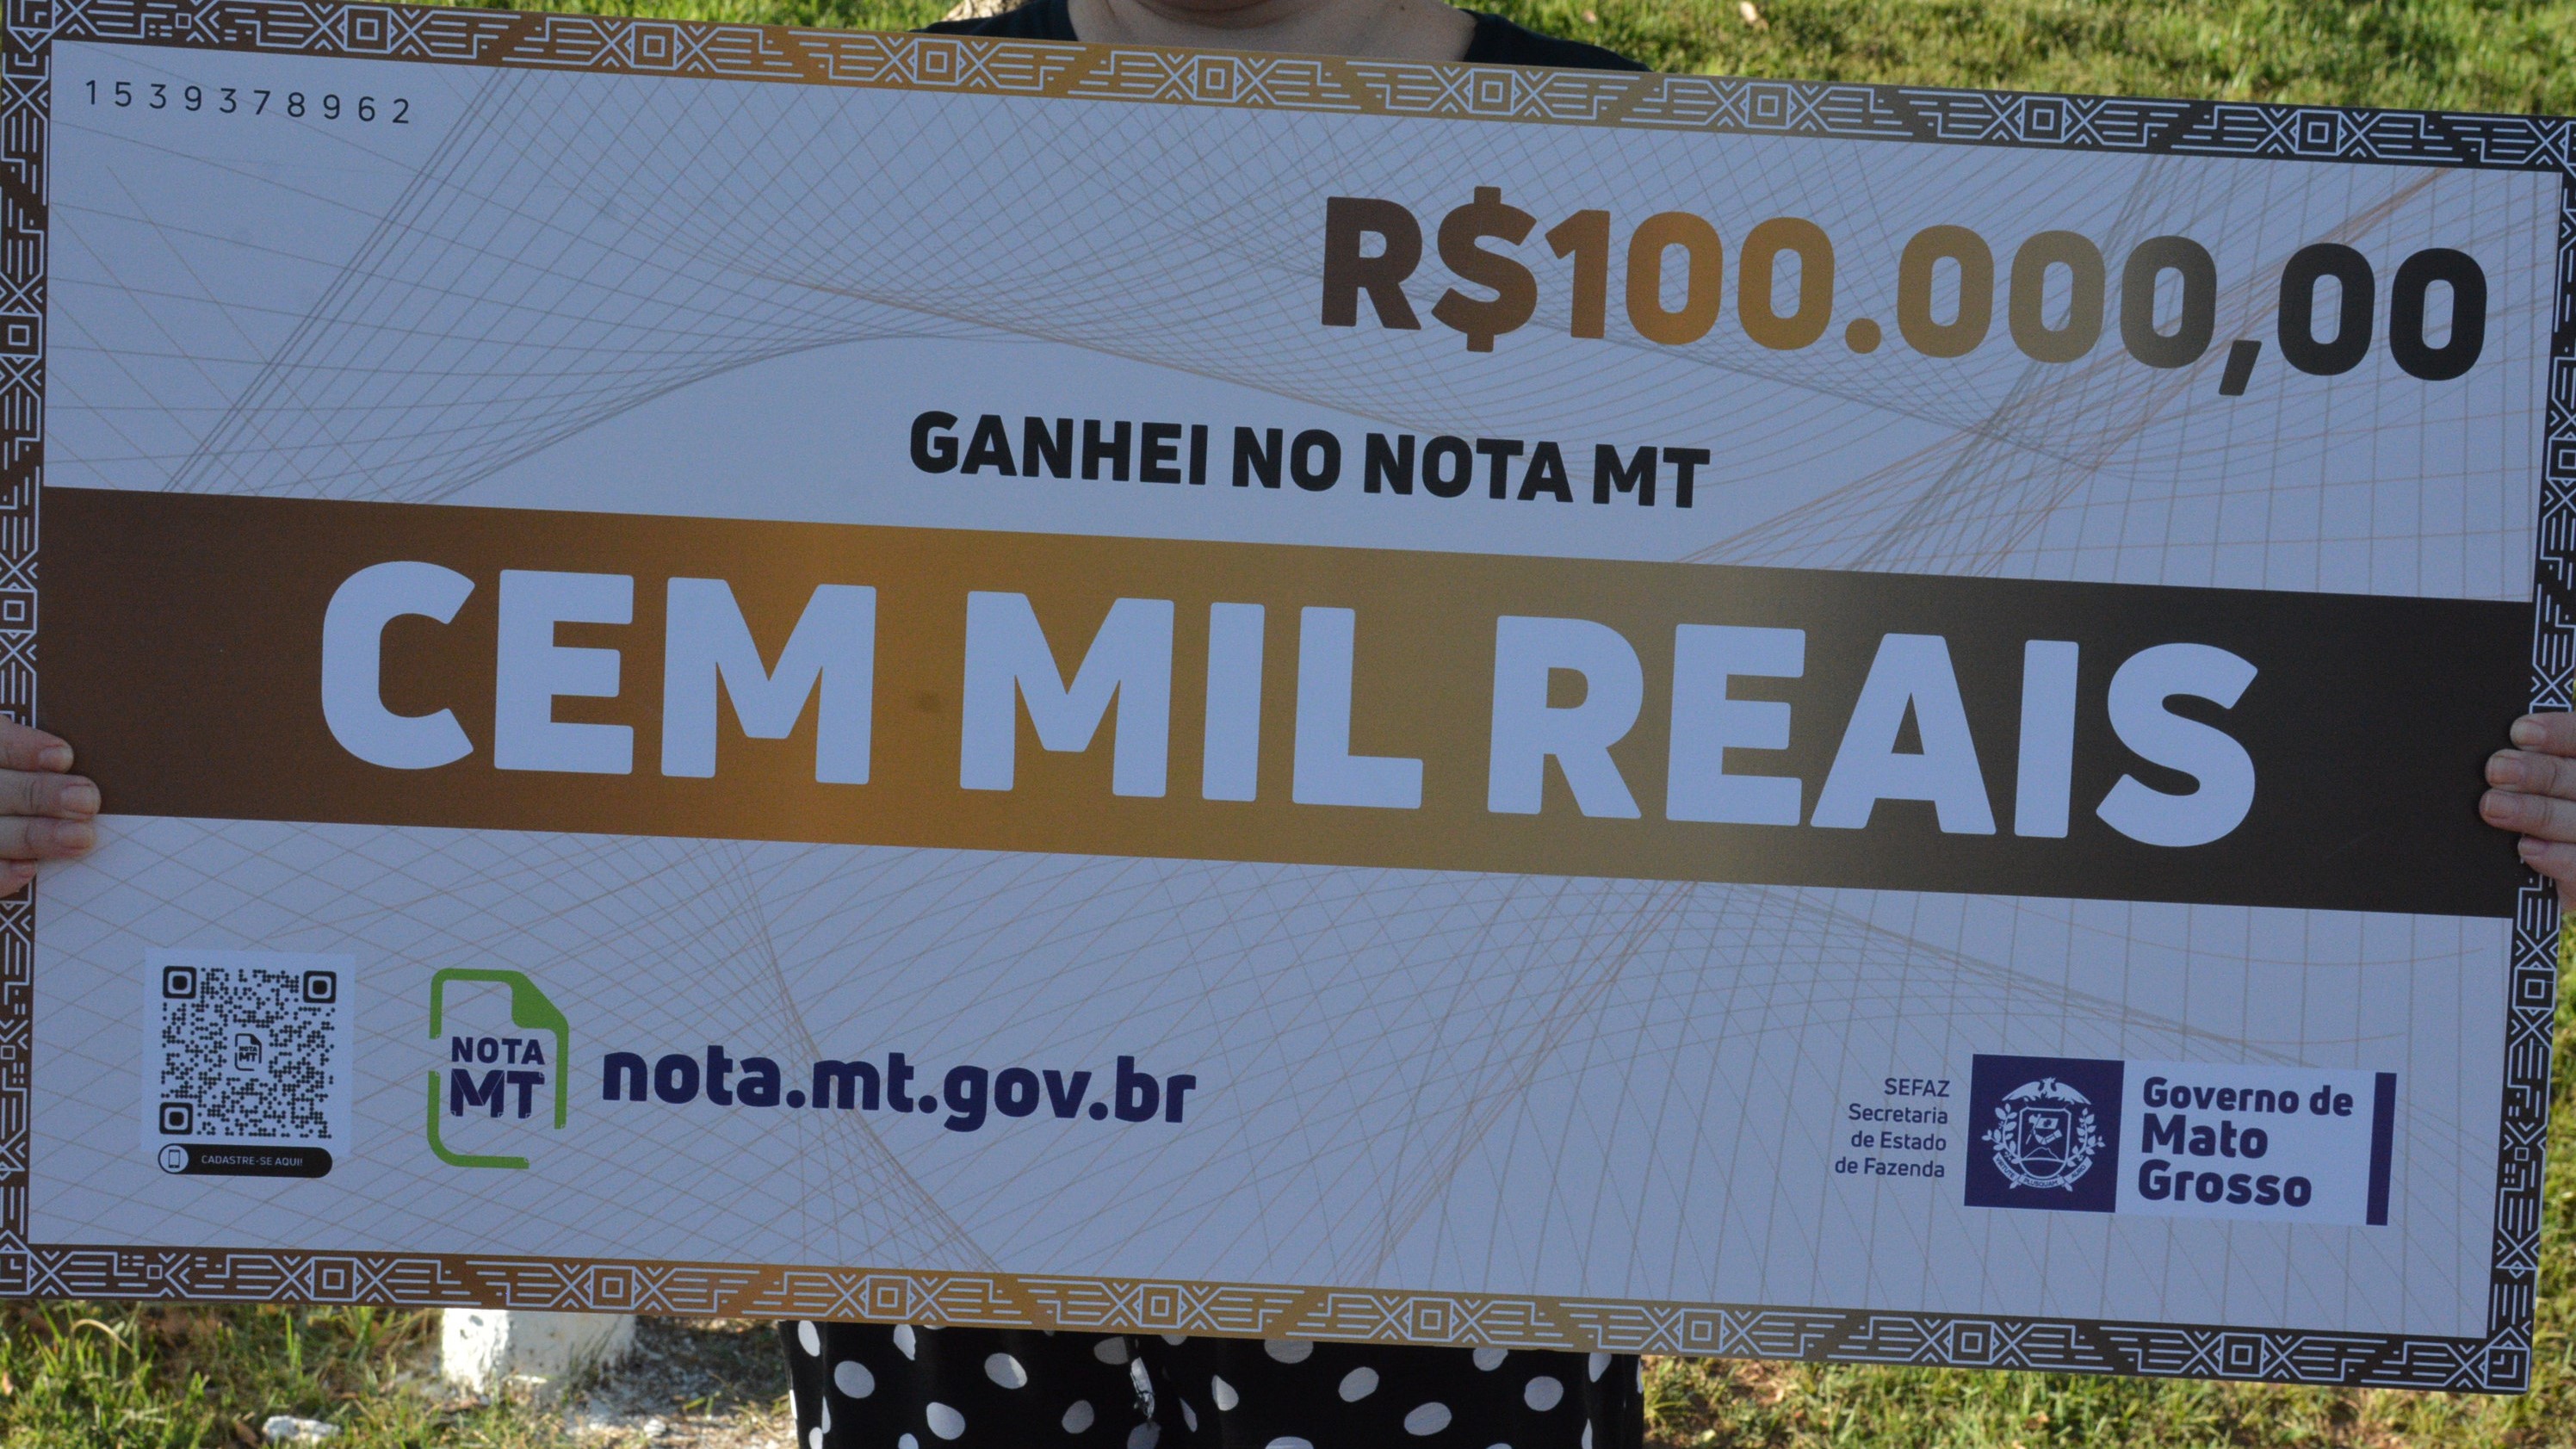 Nota MT realiza sorteio nesta quinta-feira (08) com prêmios de até R$ 100 mil